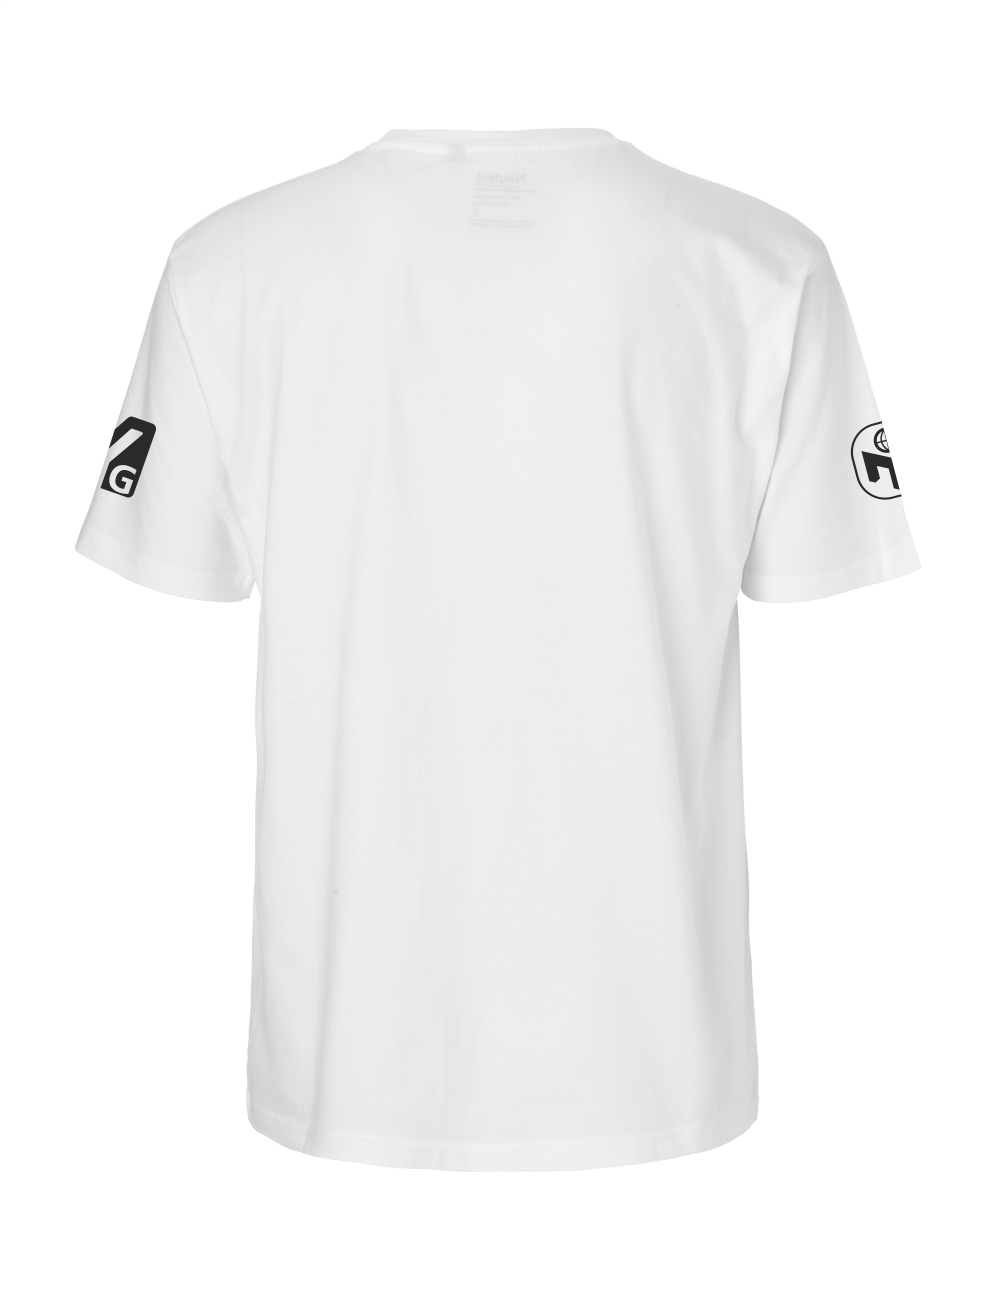 T-Shirt Herren "MY-Camp Germany" Premium